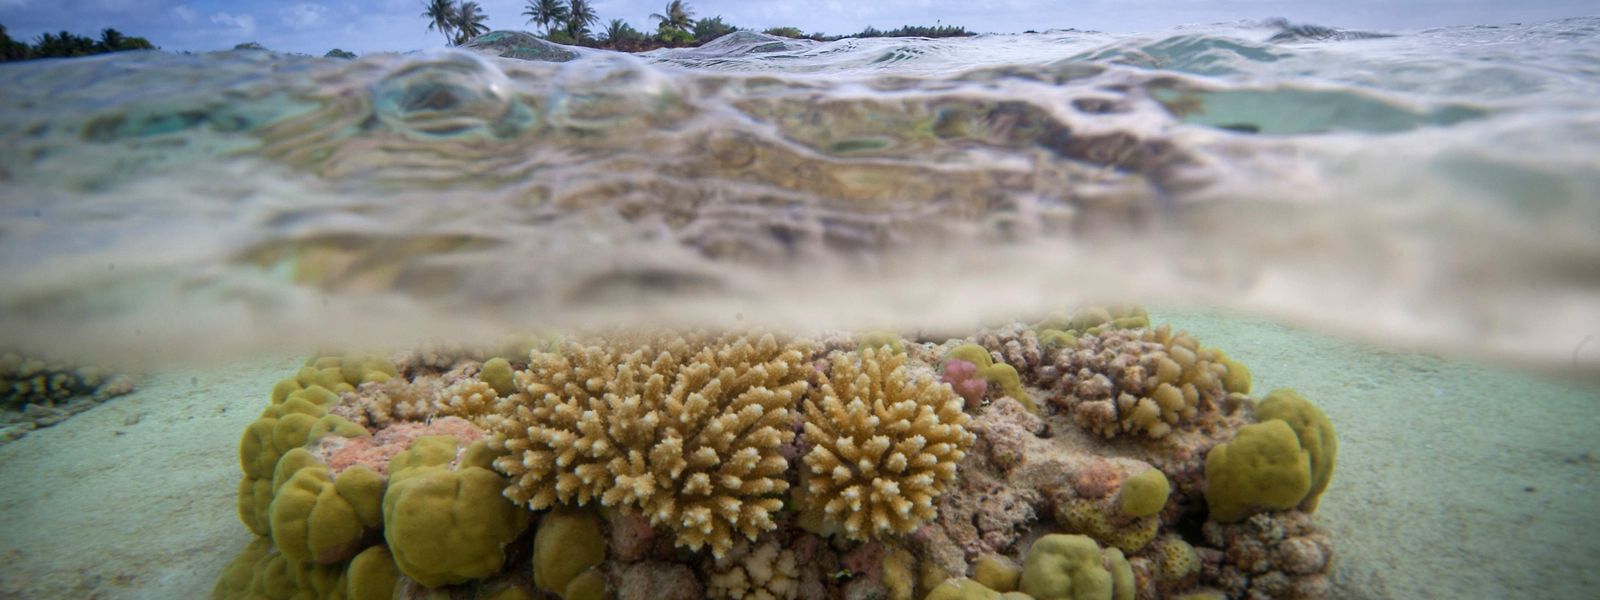  Die Korallenriffe vor dem Toau Atoll in Französisch-Polynesien sind wie viele Ökosysteme unter Wasser durch die Verschmutzung und Erwärmung der Meere gefährdet.